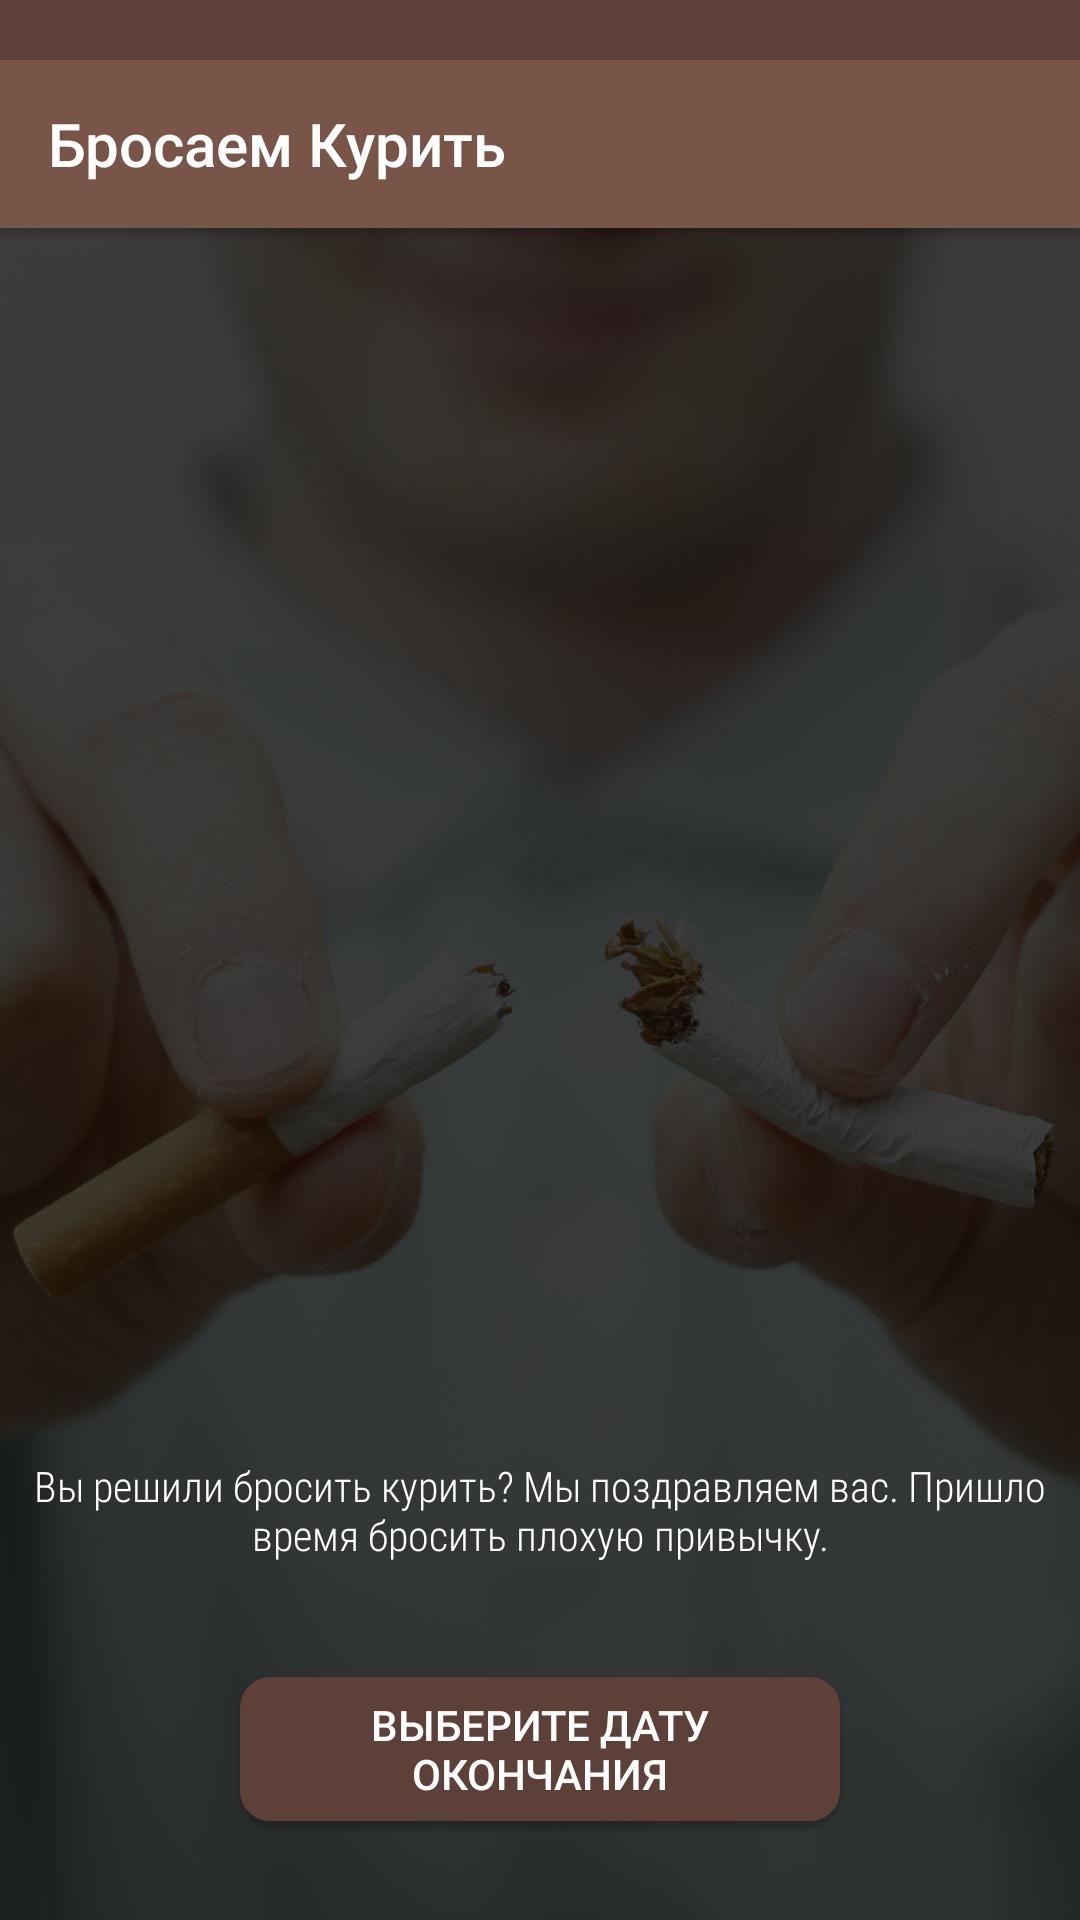 Бросить курить андроид. Бросить курить. «Бросить курить раз и навсегда». Брось курить раз и навсегда. Перестань курить.